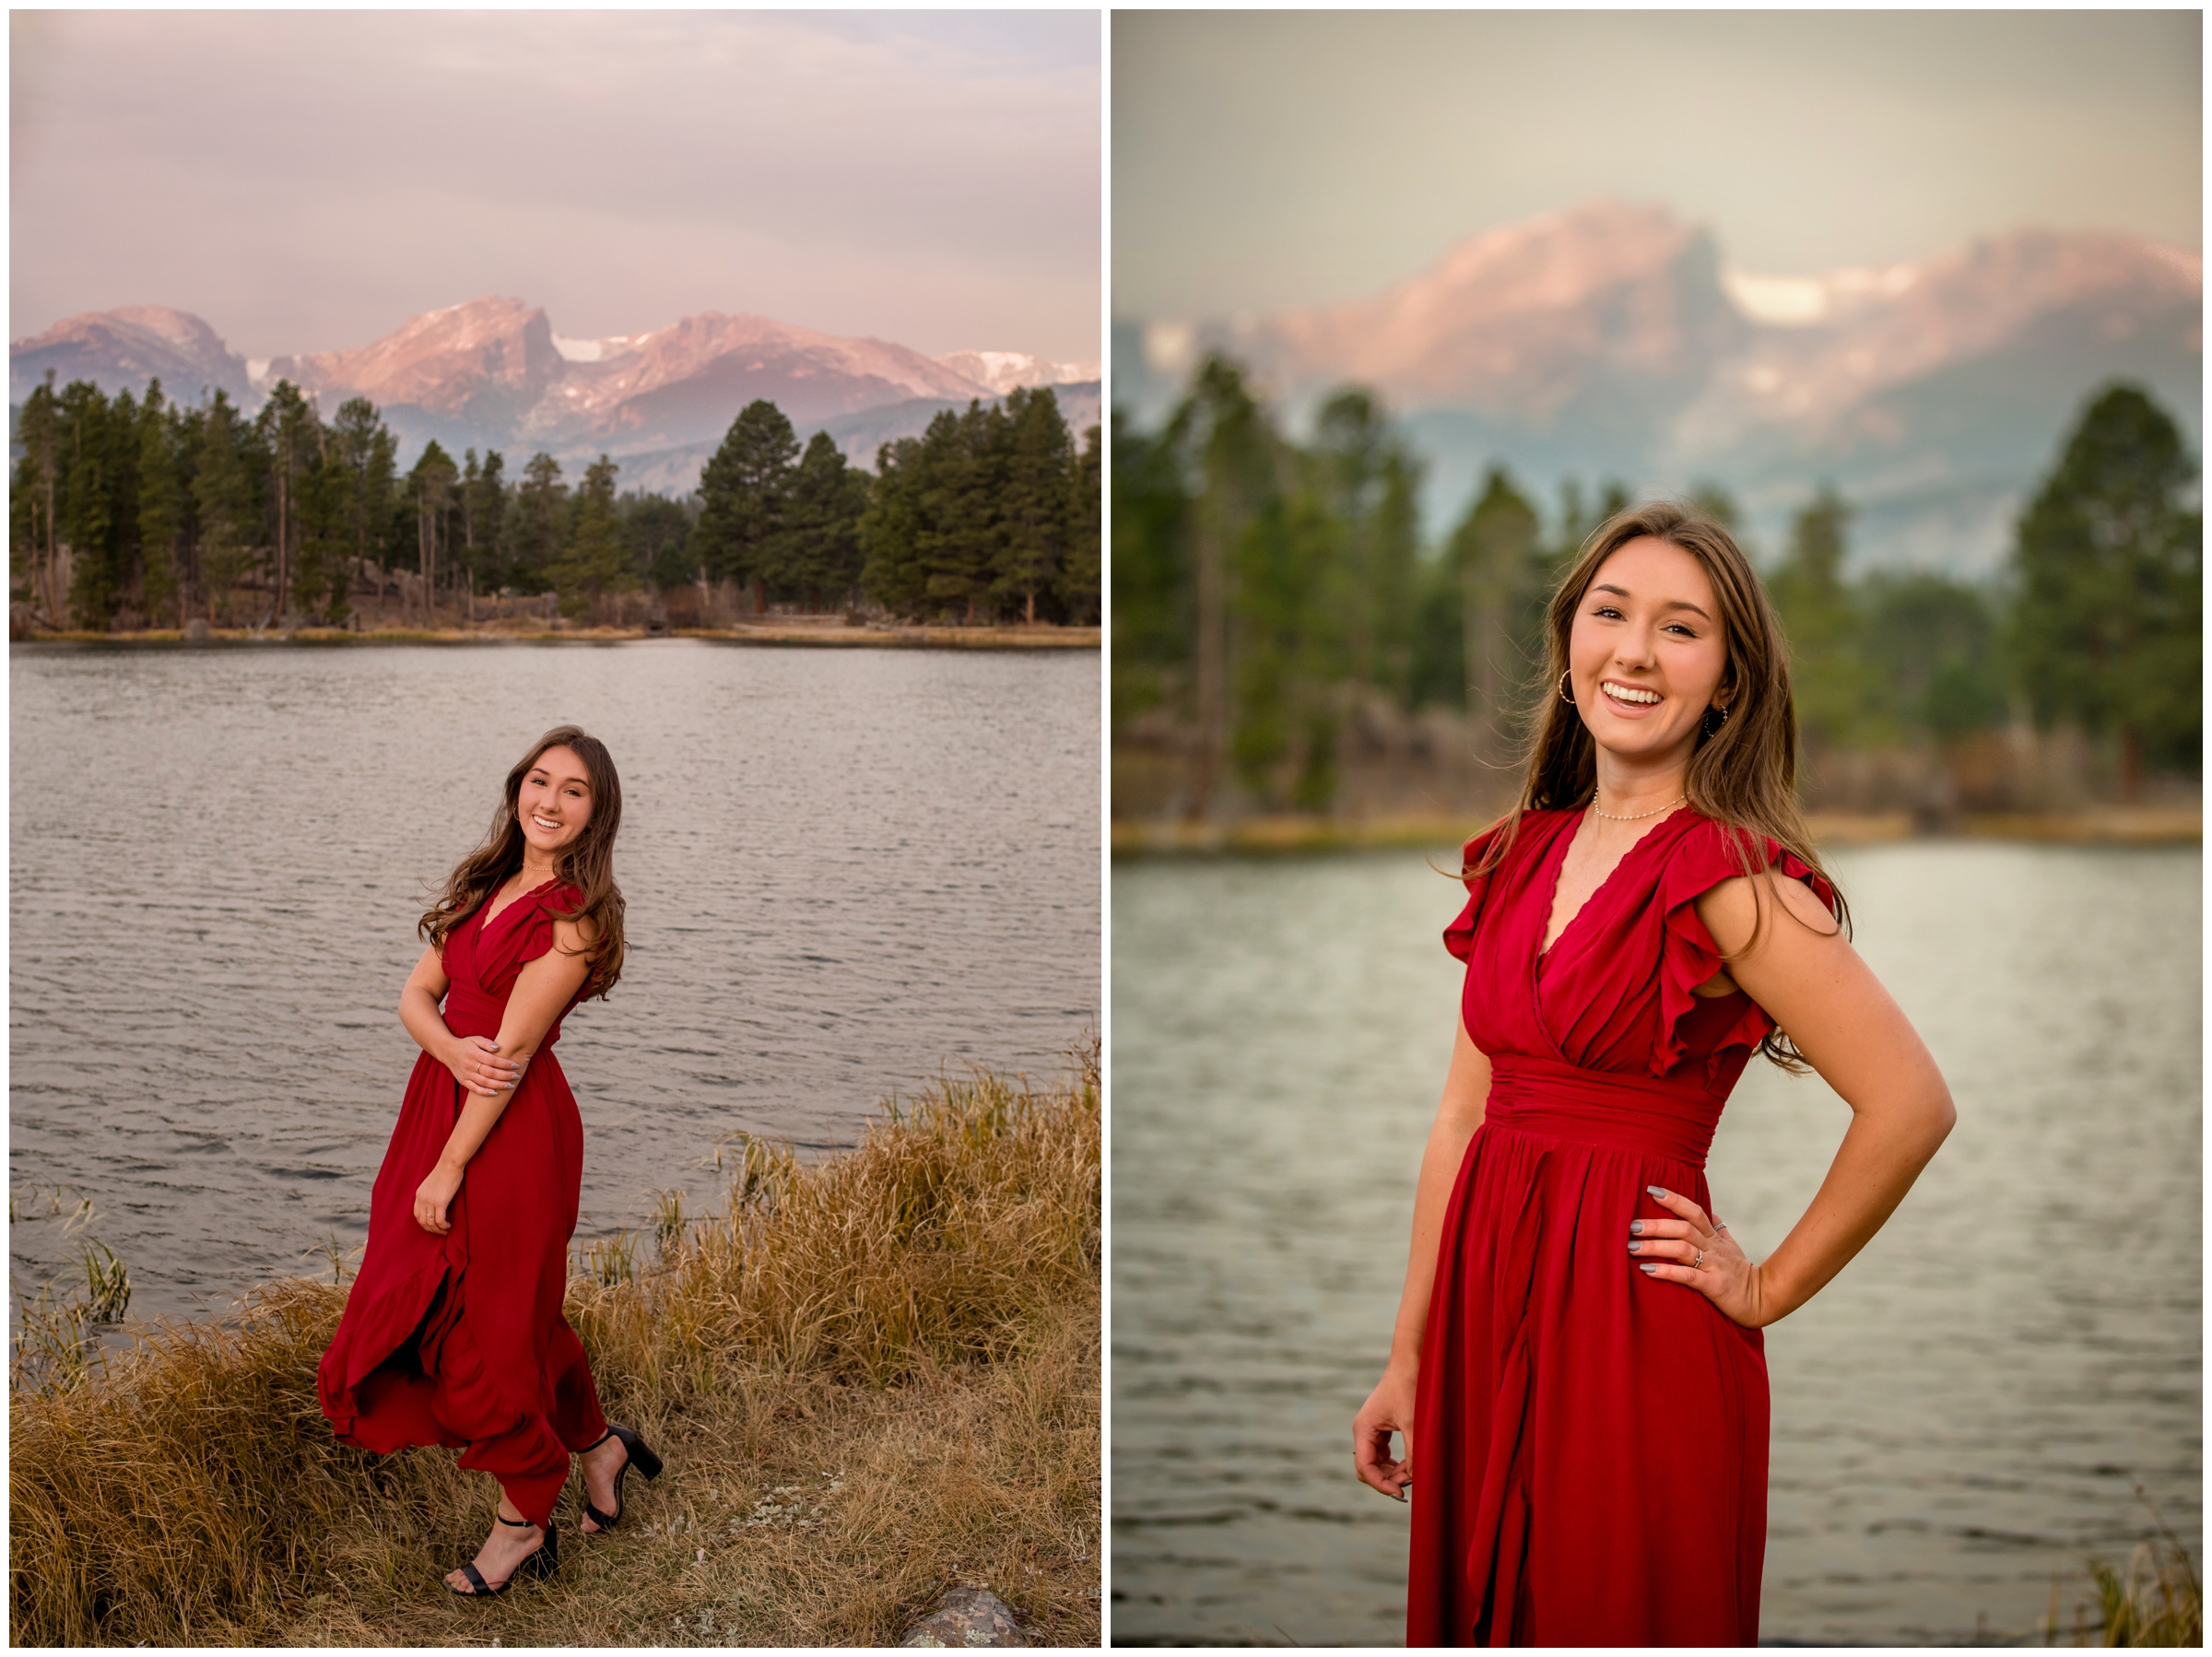 RMNP senior photos at Sprague Lake and Moraine Park by Estes Park Colorado photographer Plum Pretty Photography